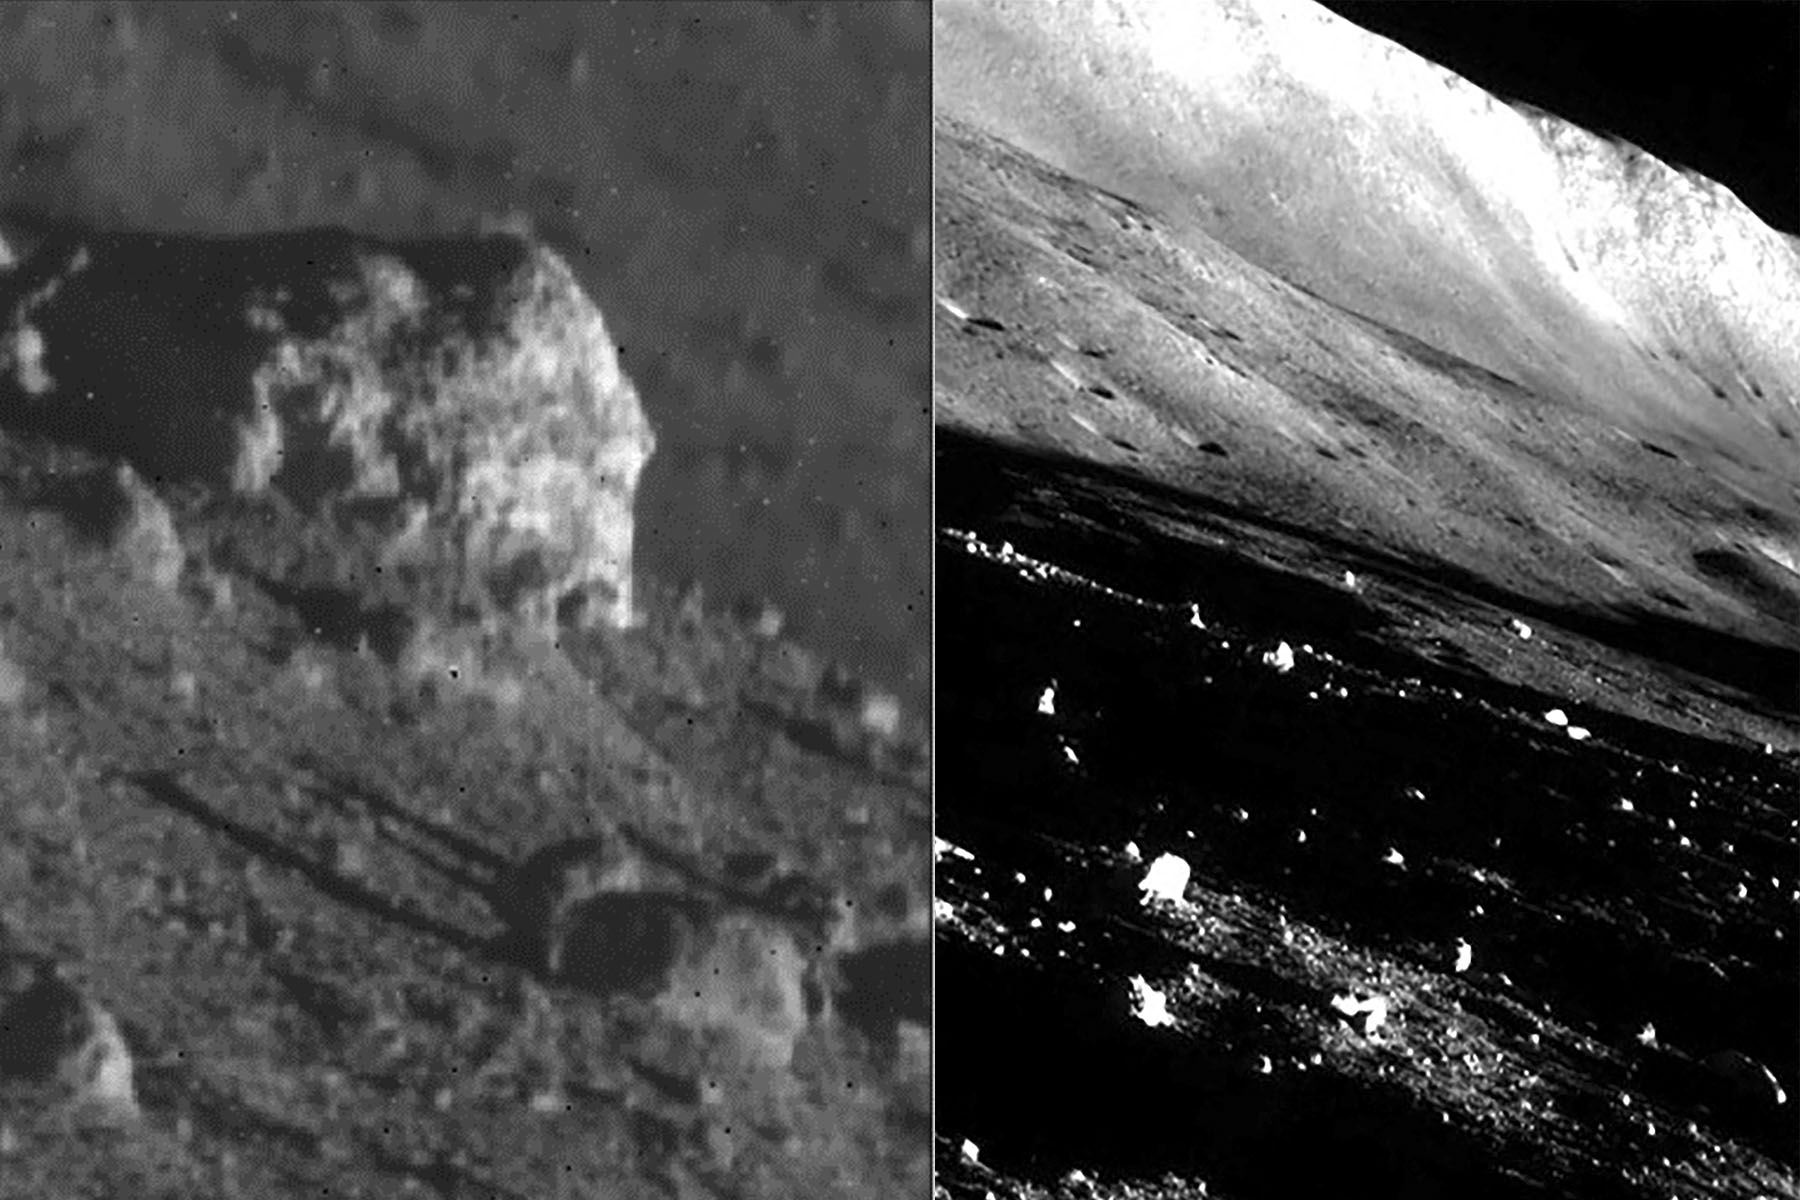 La agencia espacial posteó el jueves una foto en blanco y negro de la superficie rocosa tomada por el módulo.